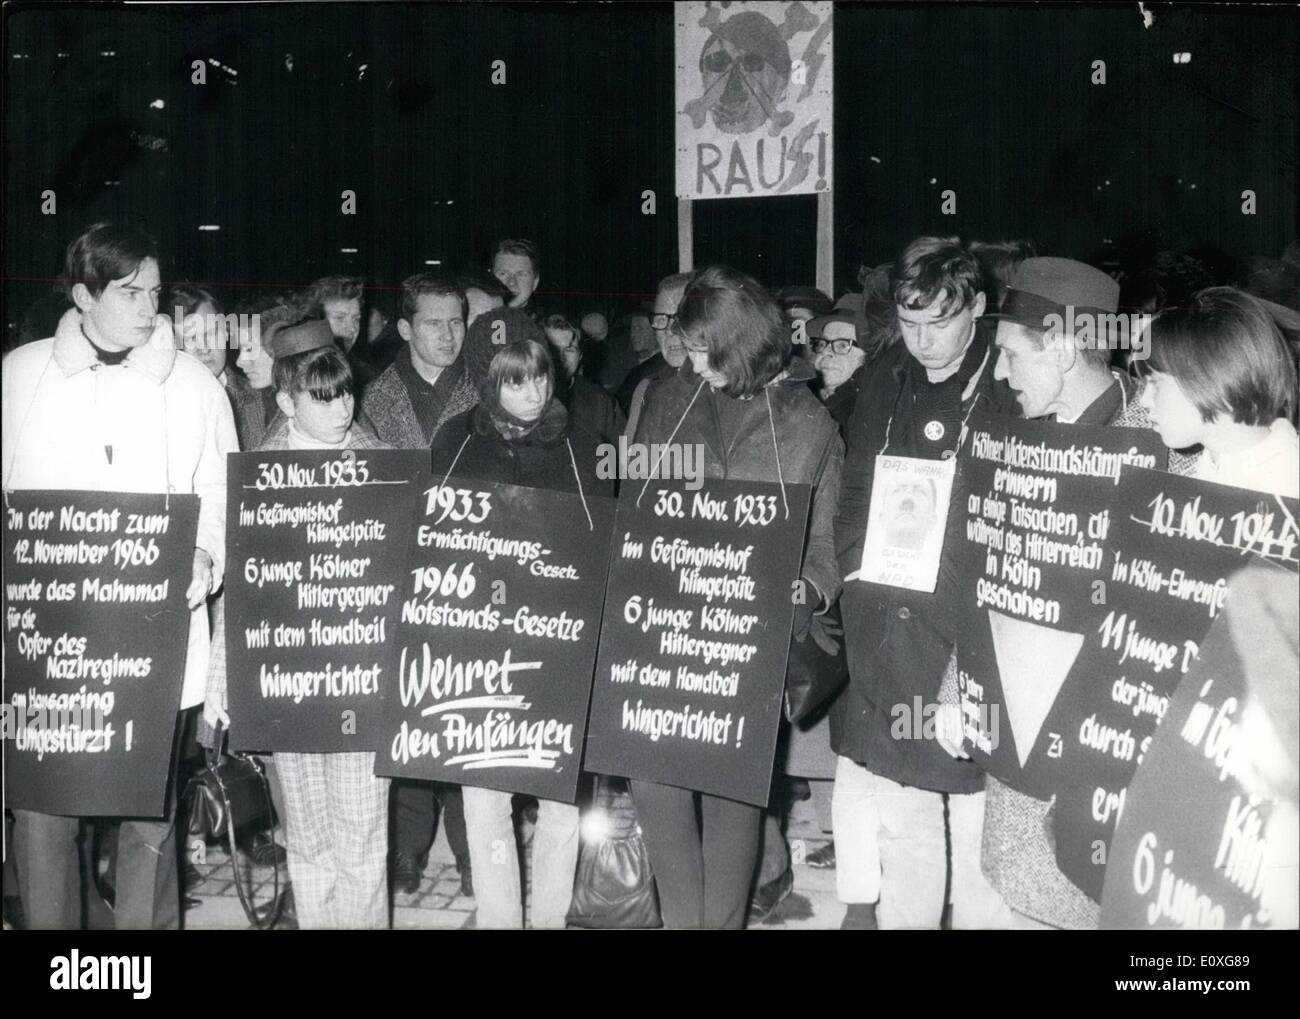 11. November 1966 - Demonstration gegen die NPD in Köln. Am 24.11.1966 gab es eine Demonstration gegen die deutsche Partei NPD. Etwa 1000 Personen nahmen Teil, sie ging an den Gedenkstein für die Opfer des "Dritten Reiches" und legte dort einen Kranz nieder. OPS: Die Demonstration am 24.11.1966 in Köln / Deutschland. Stockfoto